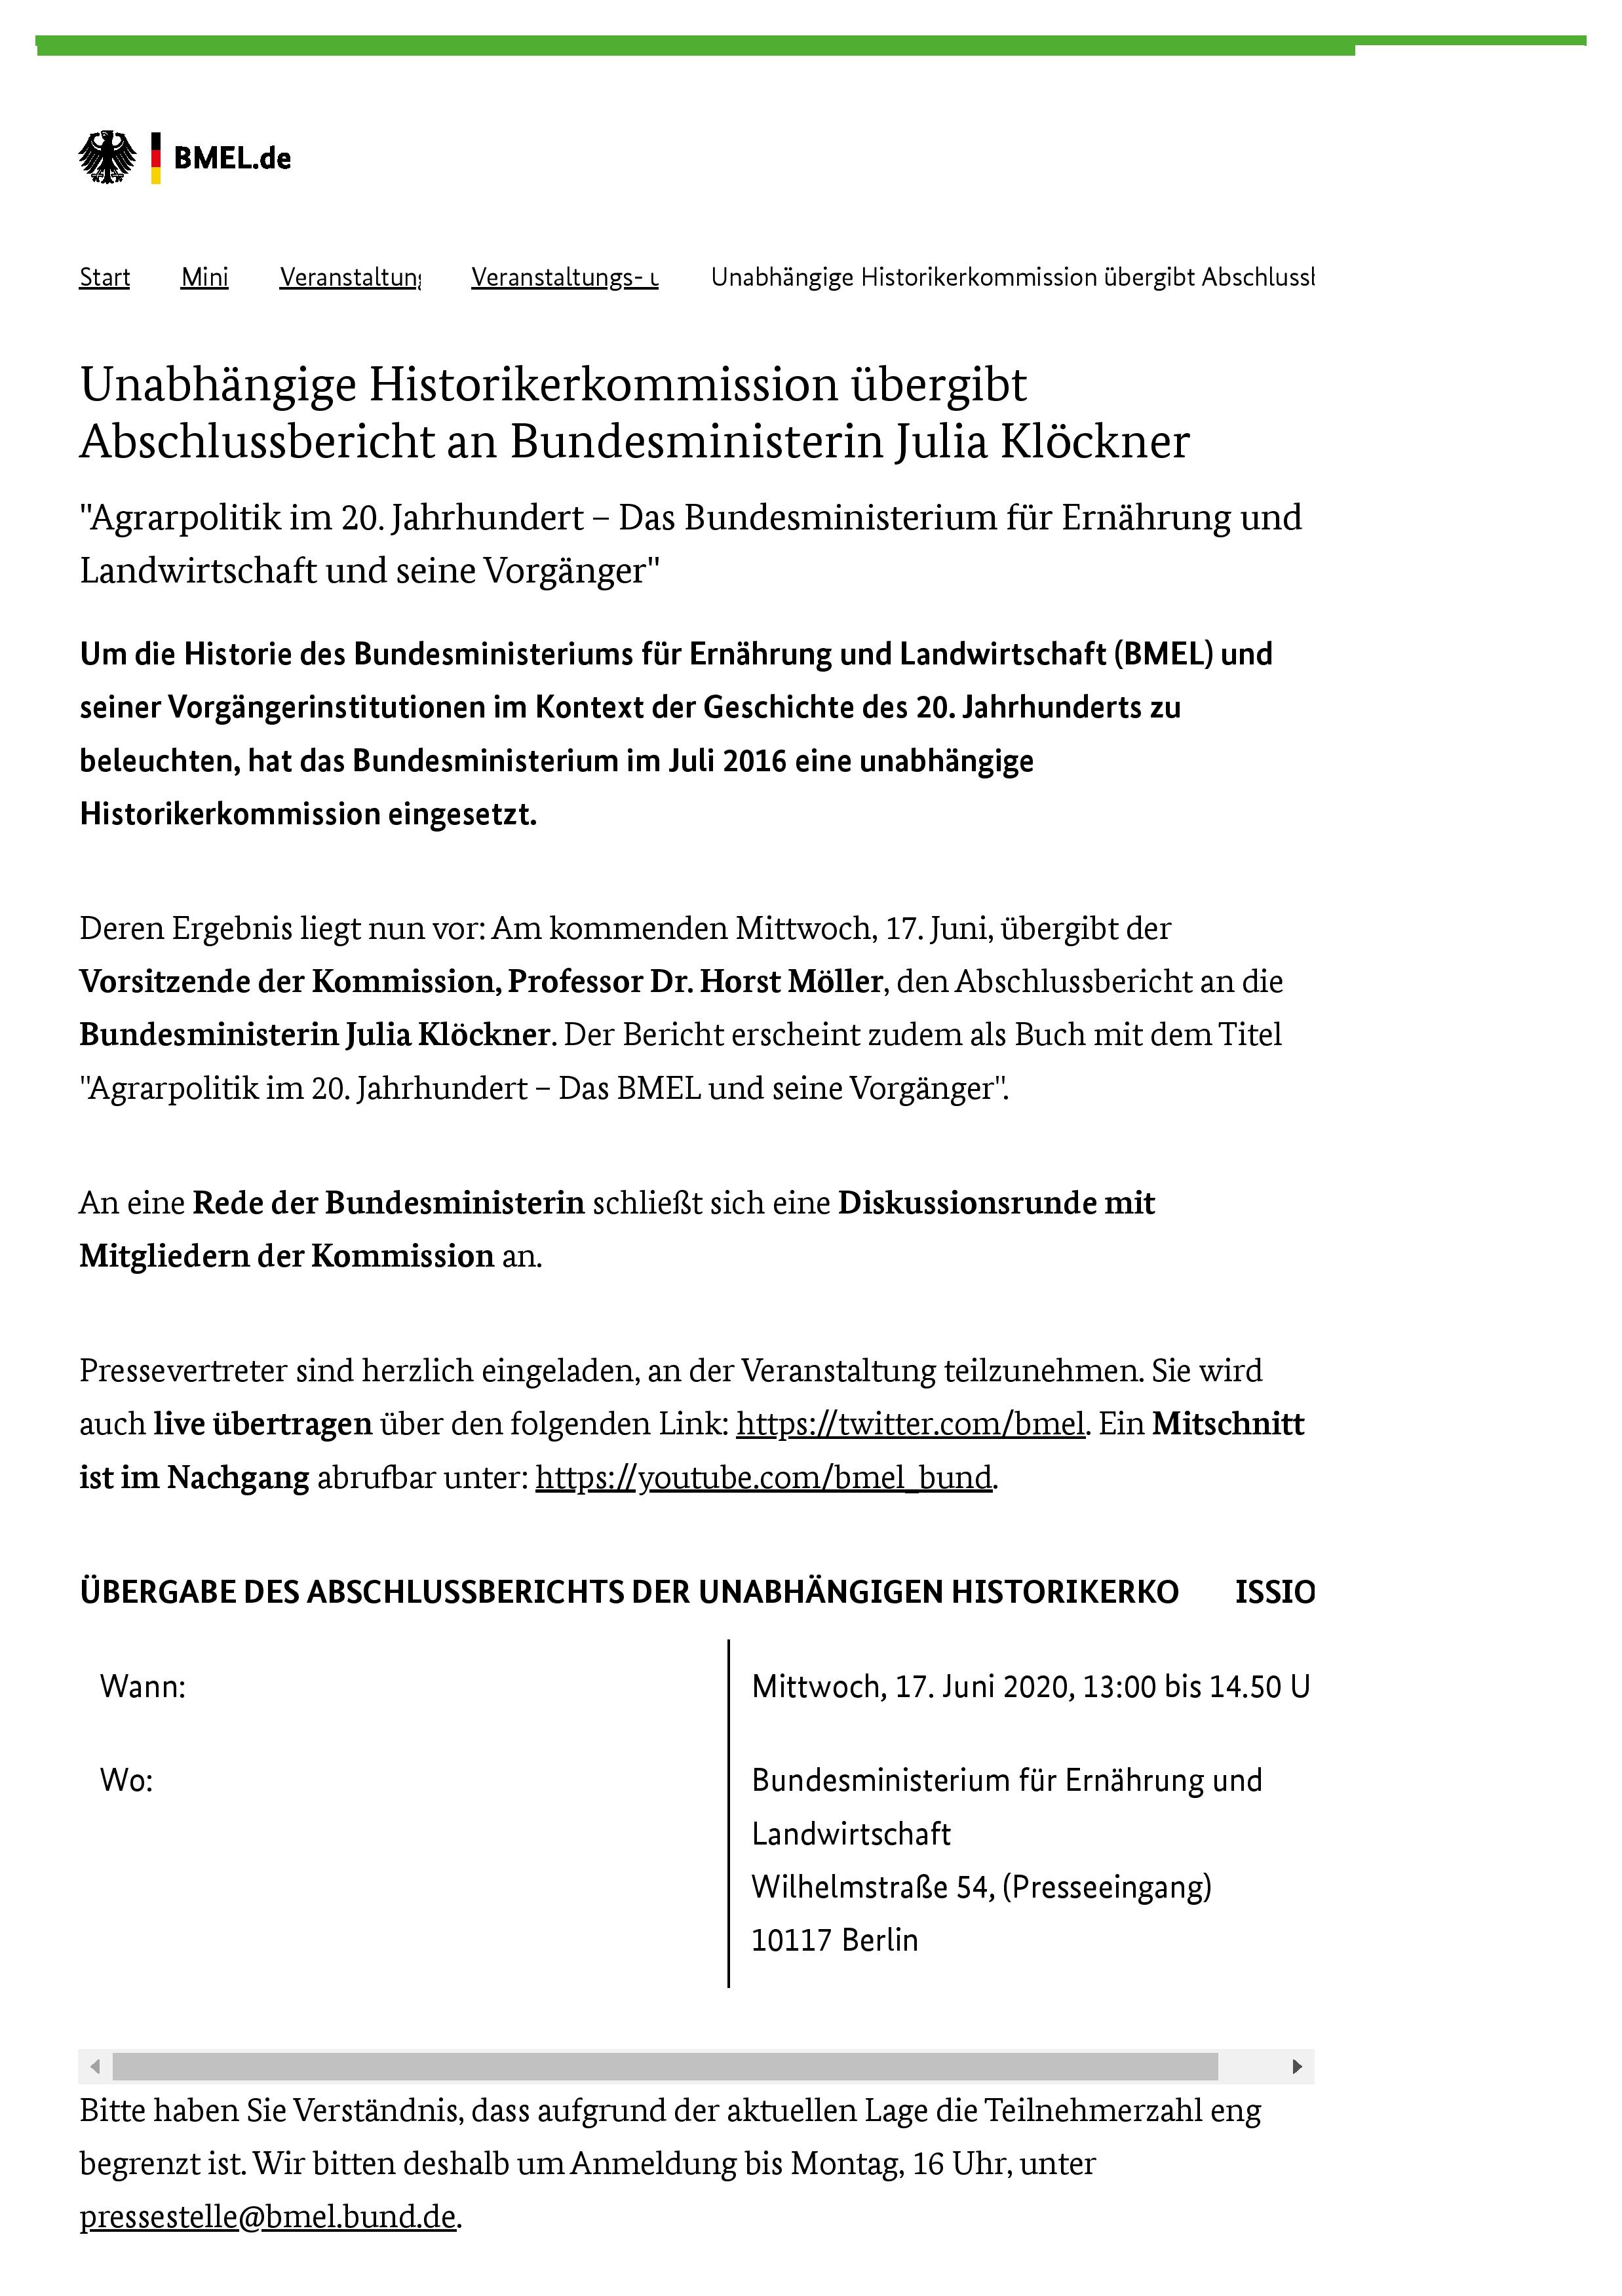 BMEL - Veranstaltungs- und Termin-Uebersicht - Unabhängige Historikerkommission übergibt Abschlussbericht an Bundesministerin Julia Klöckner-page-001